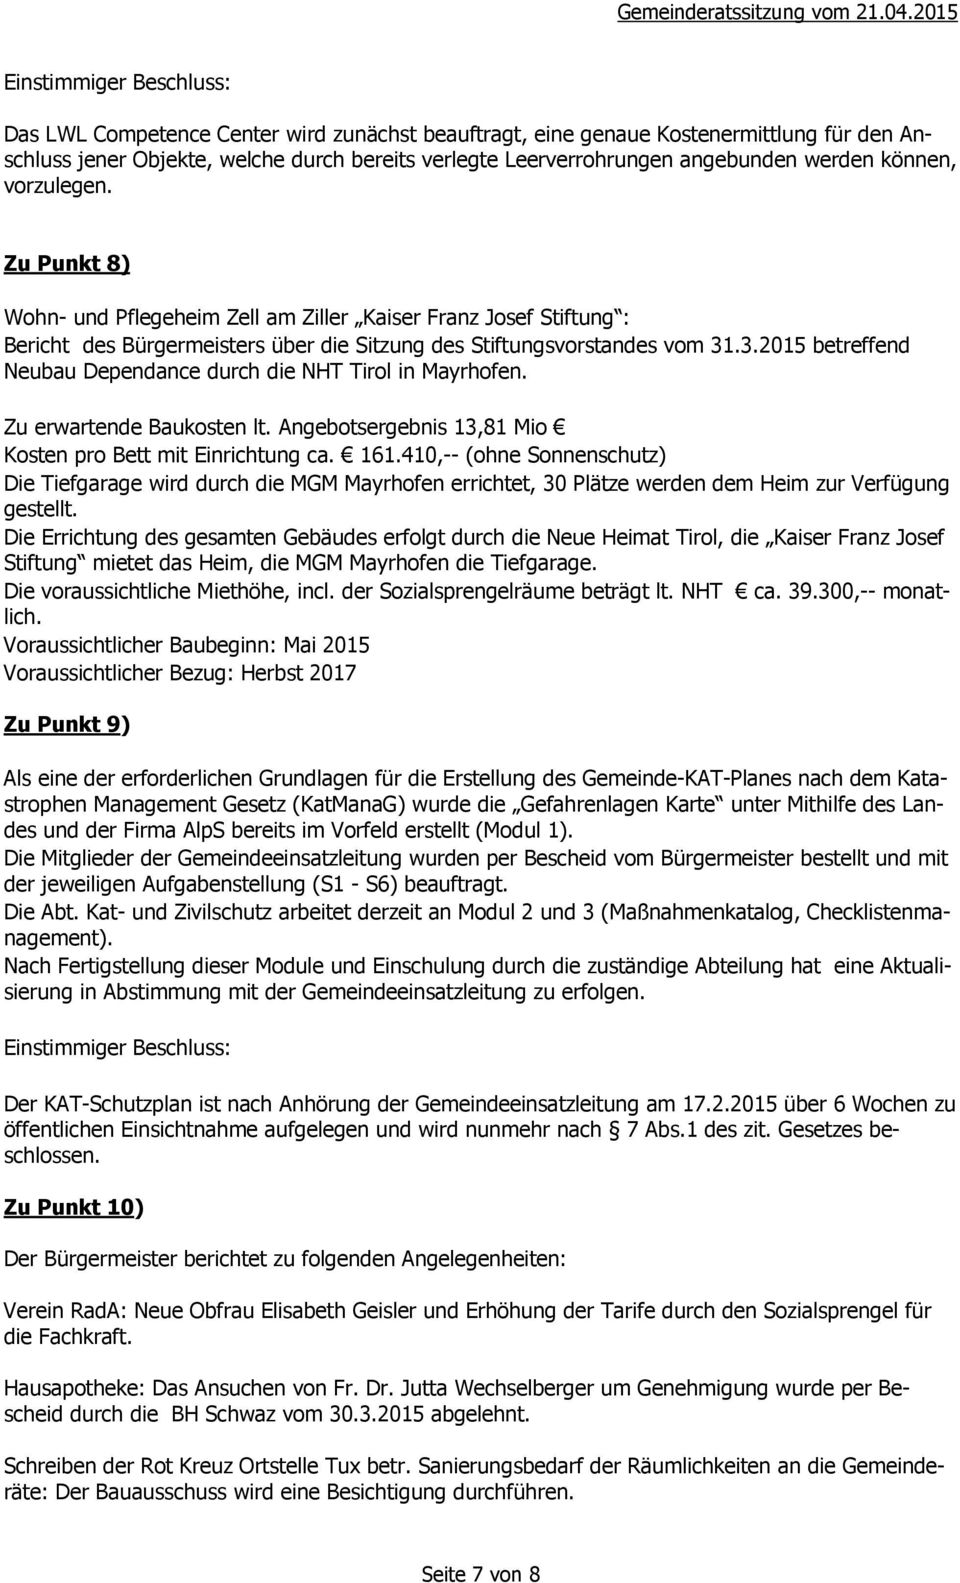 .3.2015 betreffend Neubau Dependance durch die NHT Tirol in Mayrhofen. Zu erwartende Baukosten lt. Angebotsergebnis 13,81 Mio Kosten pro Bett mit Einrichtung ca. 161.